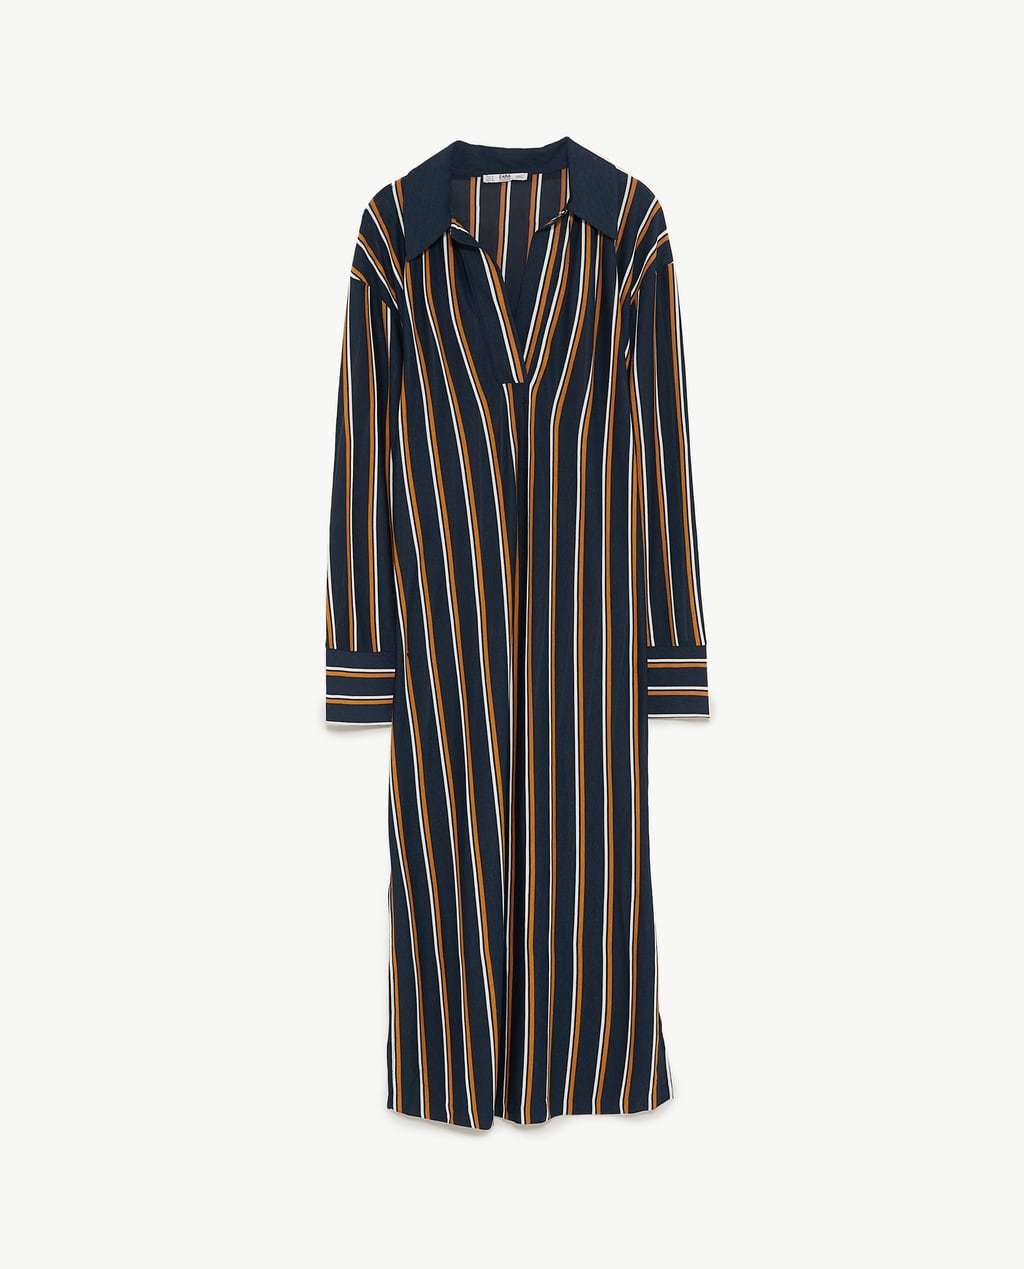 Vestido de rayas verticales de Zara (25,95 euros).